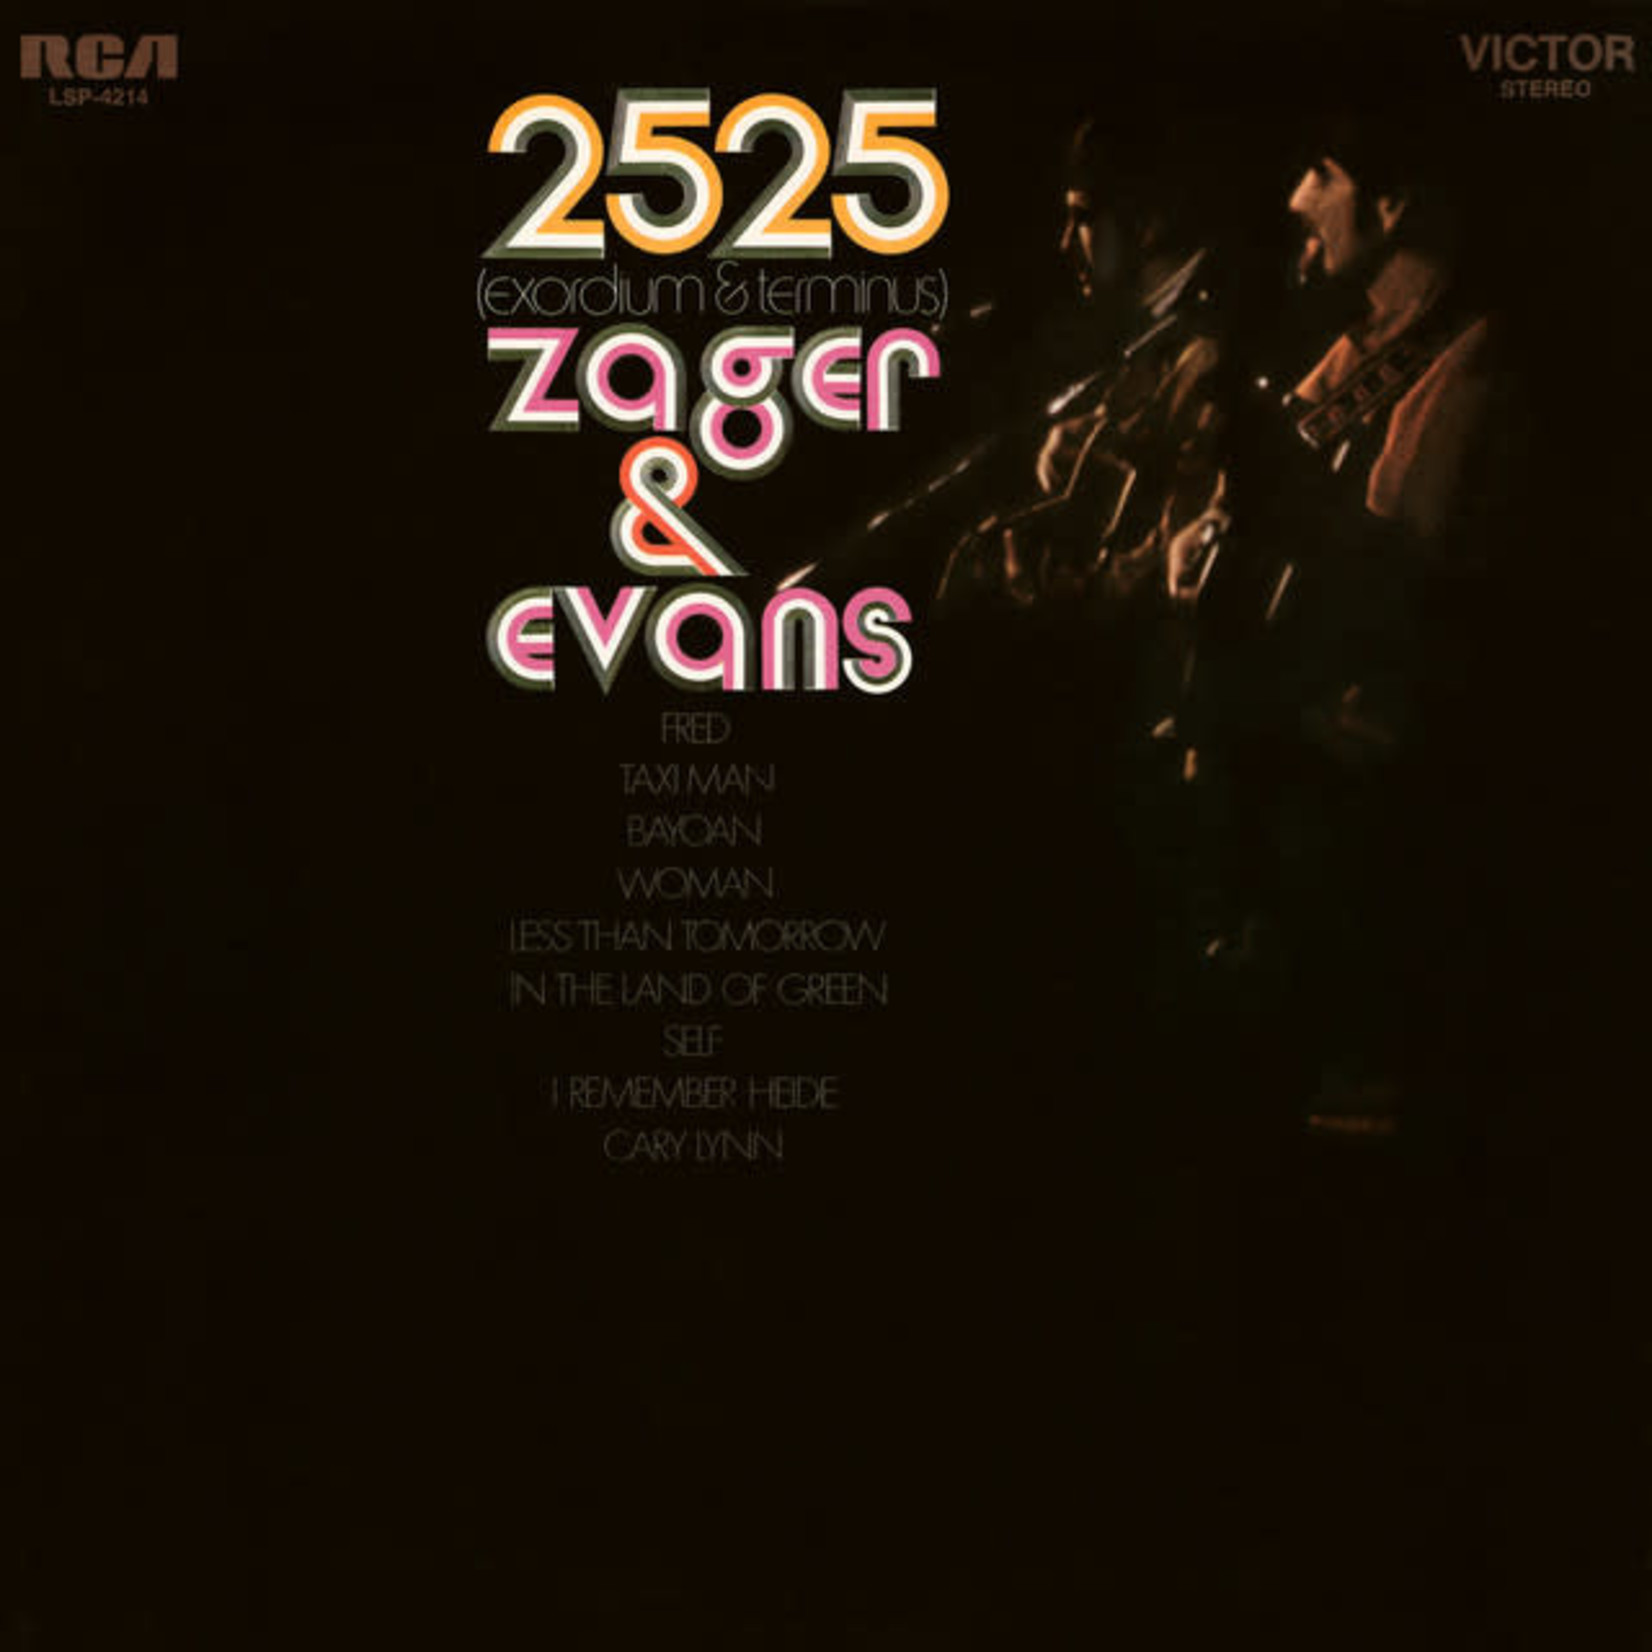 [Vintage] Zager & Evans - 2525